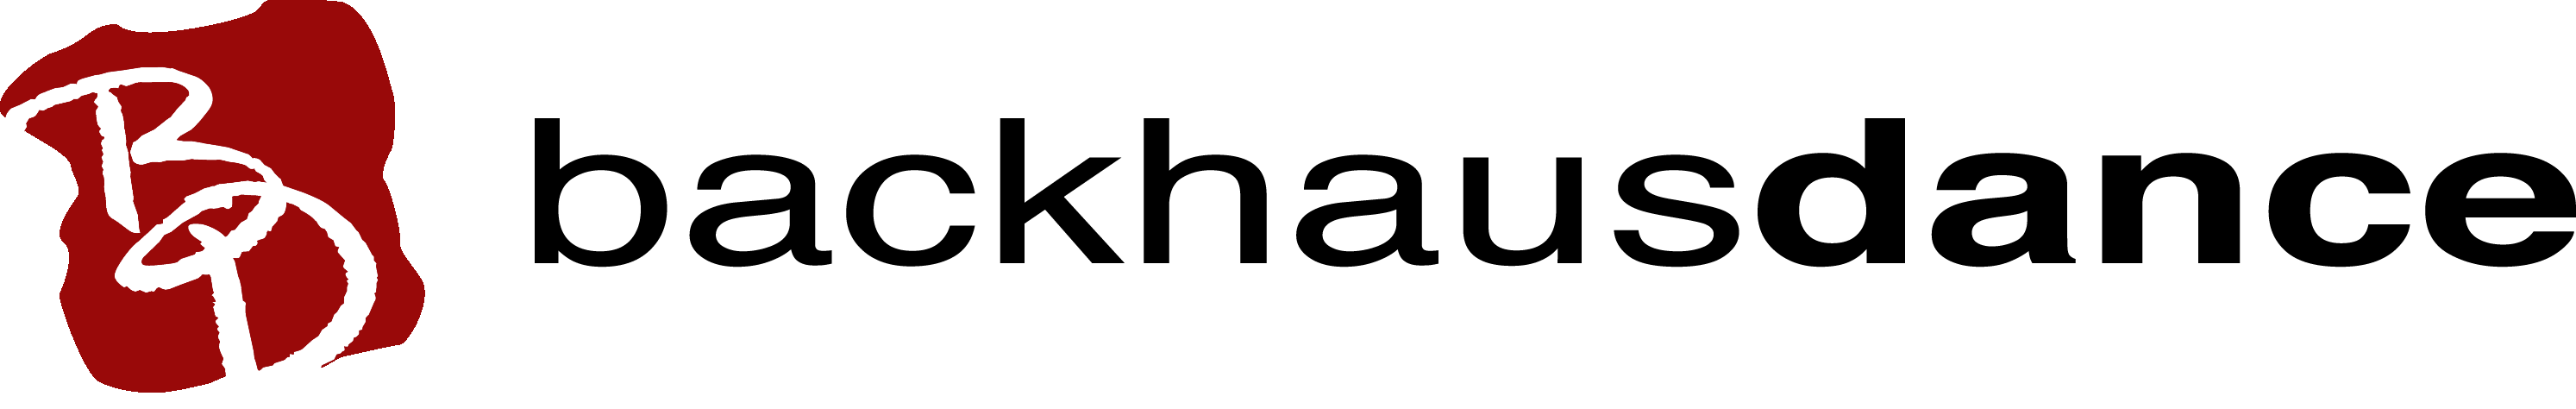 June 9 Logo Backhausdance Black